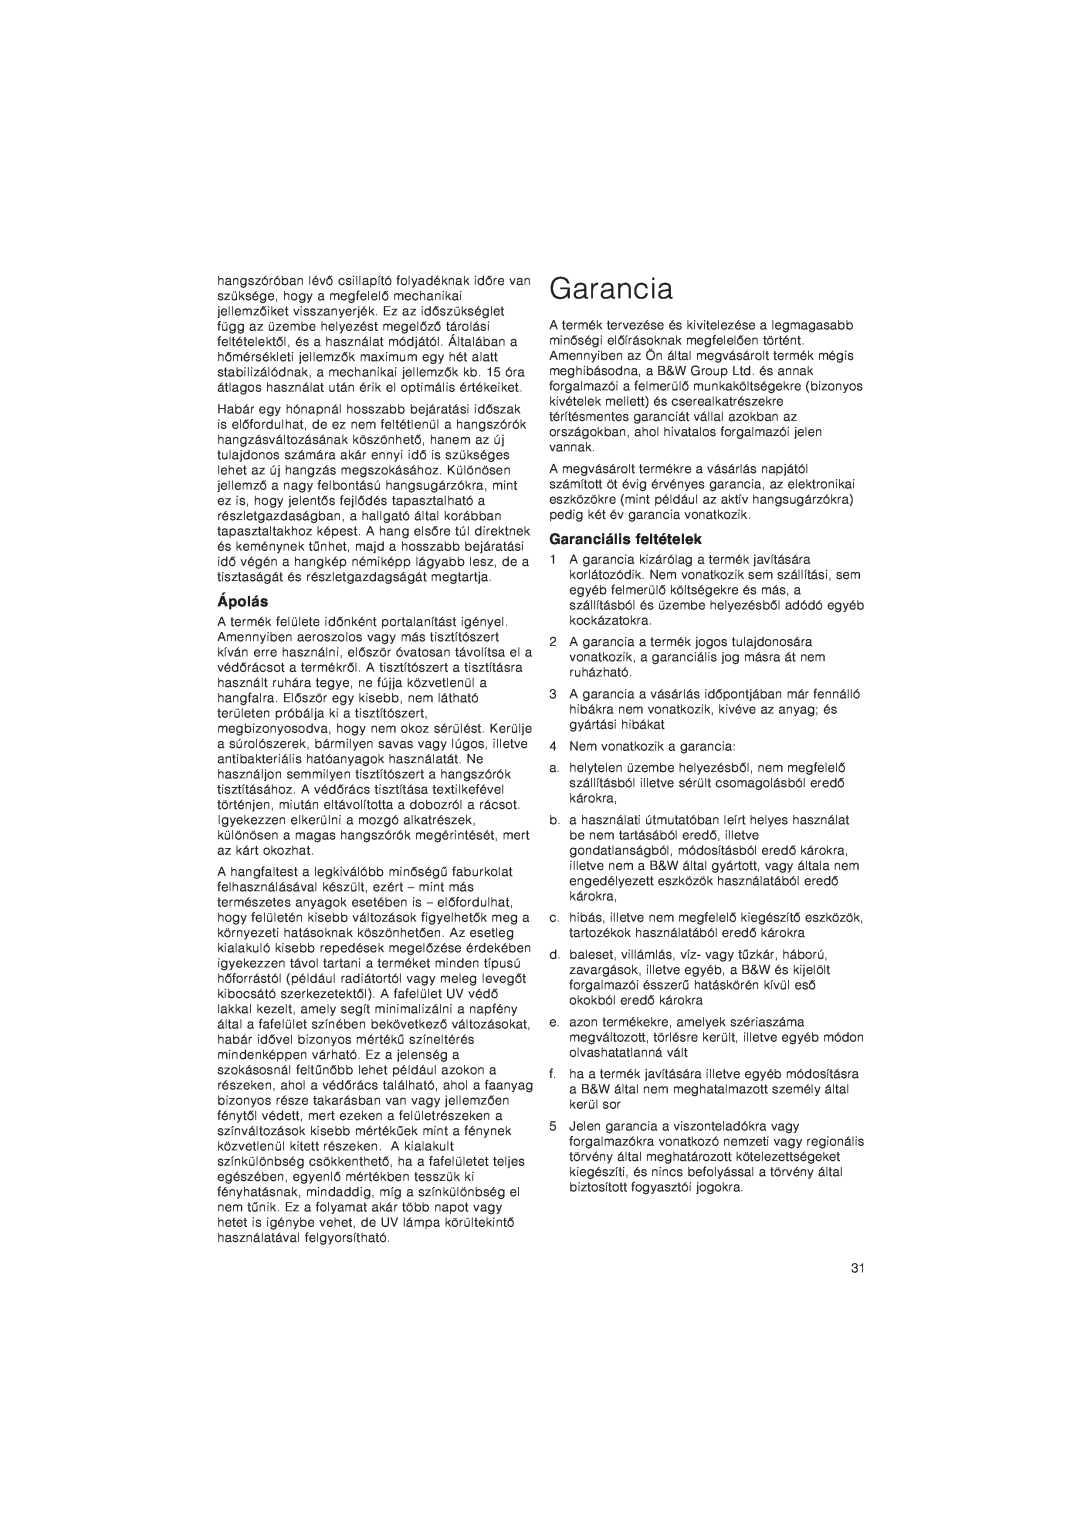 Bowers & Wilkins CM9 owner manual Garancia, Ápolás, Garanciális feltételek 